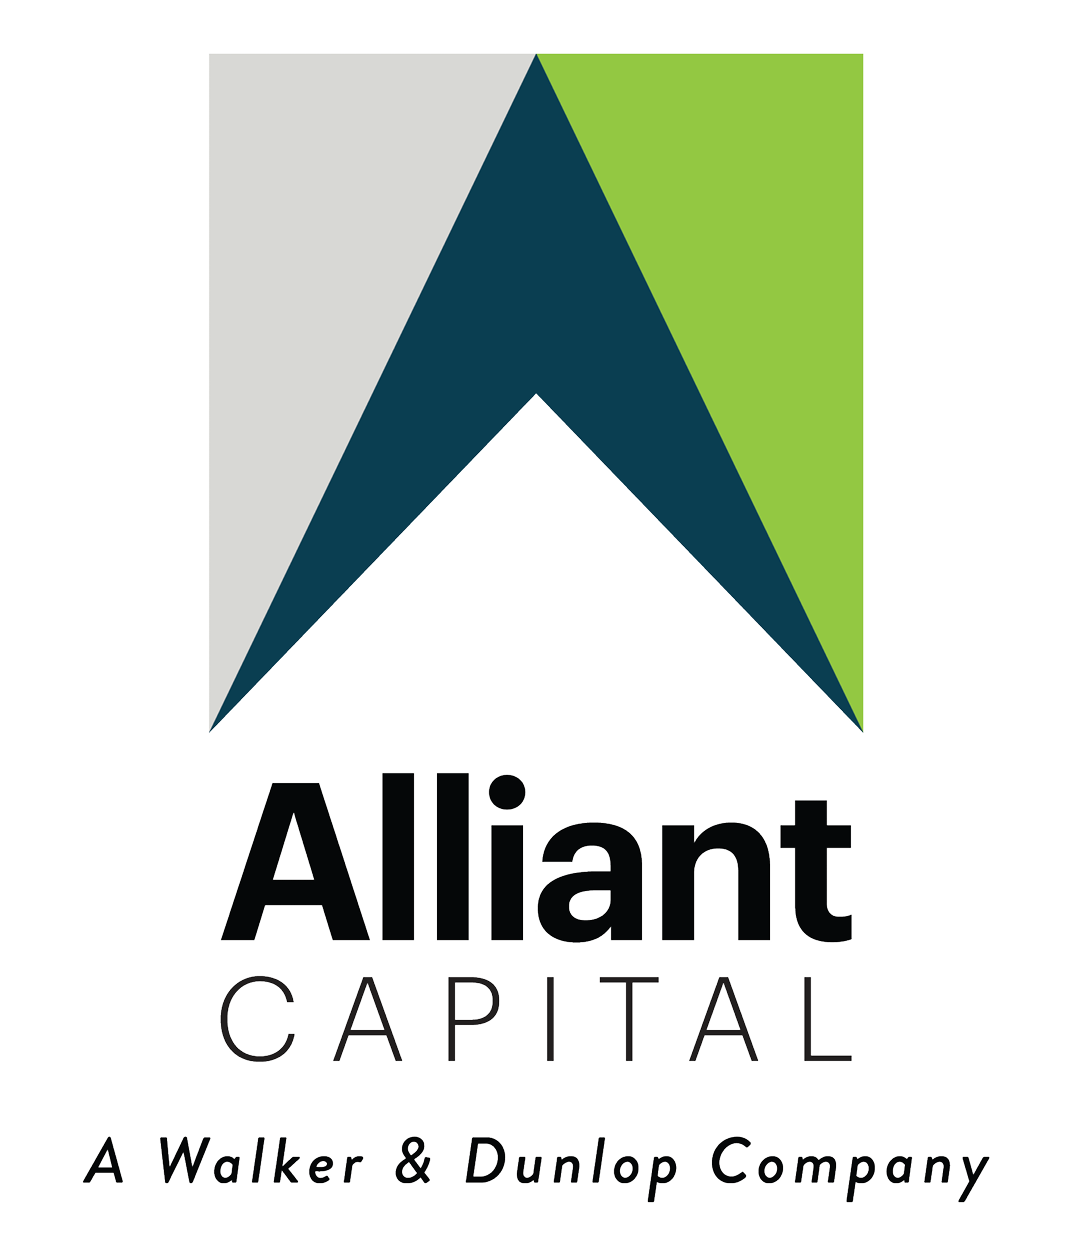 Alliant Capital